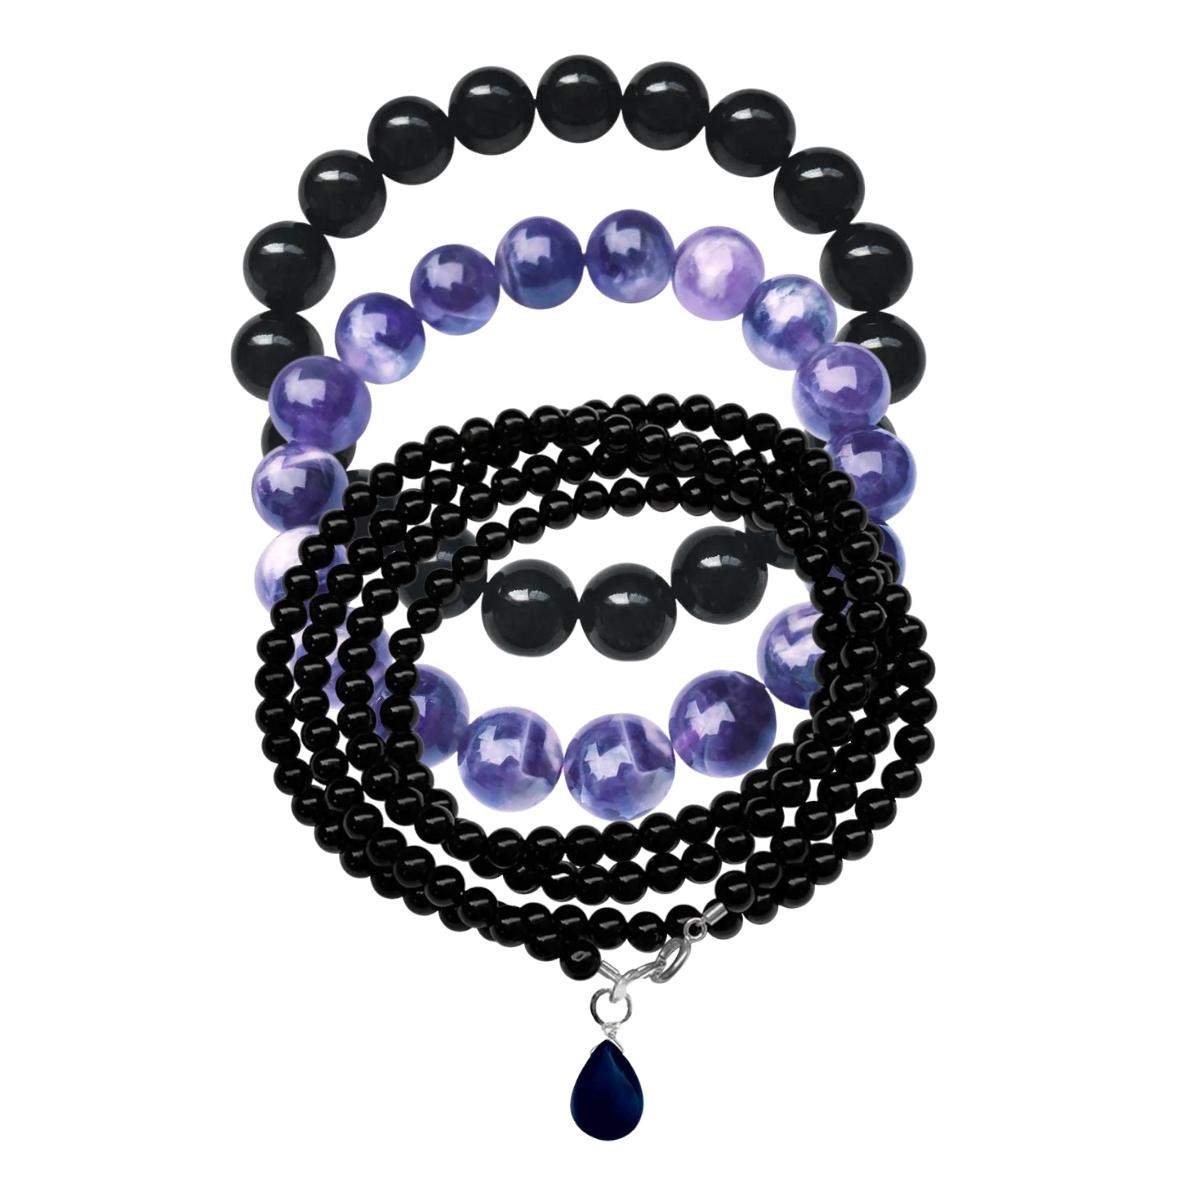 Wear the Leo Zodiac Gemstone Bracelet Set to feel the Leo energies!